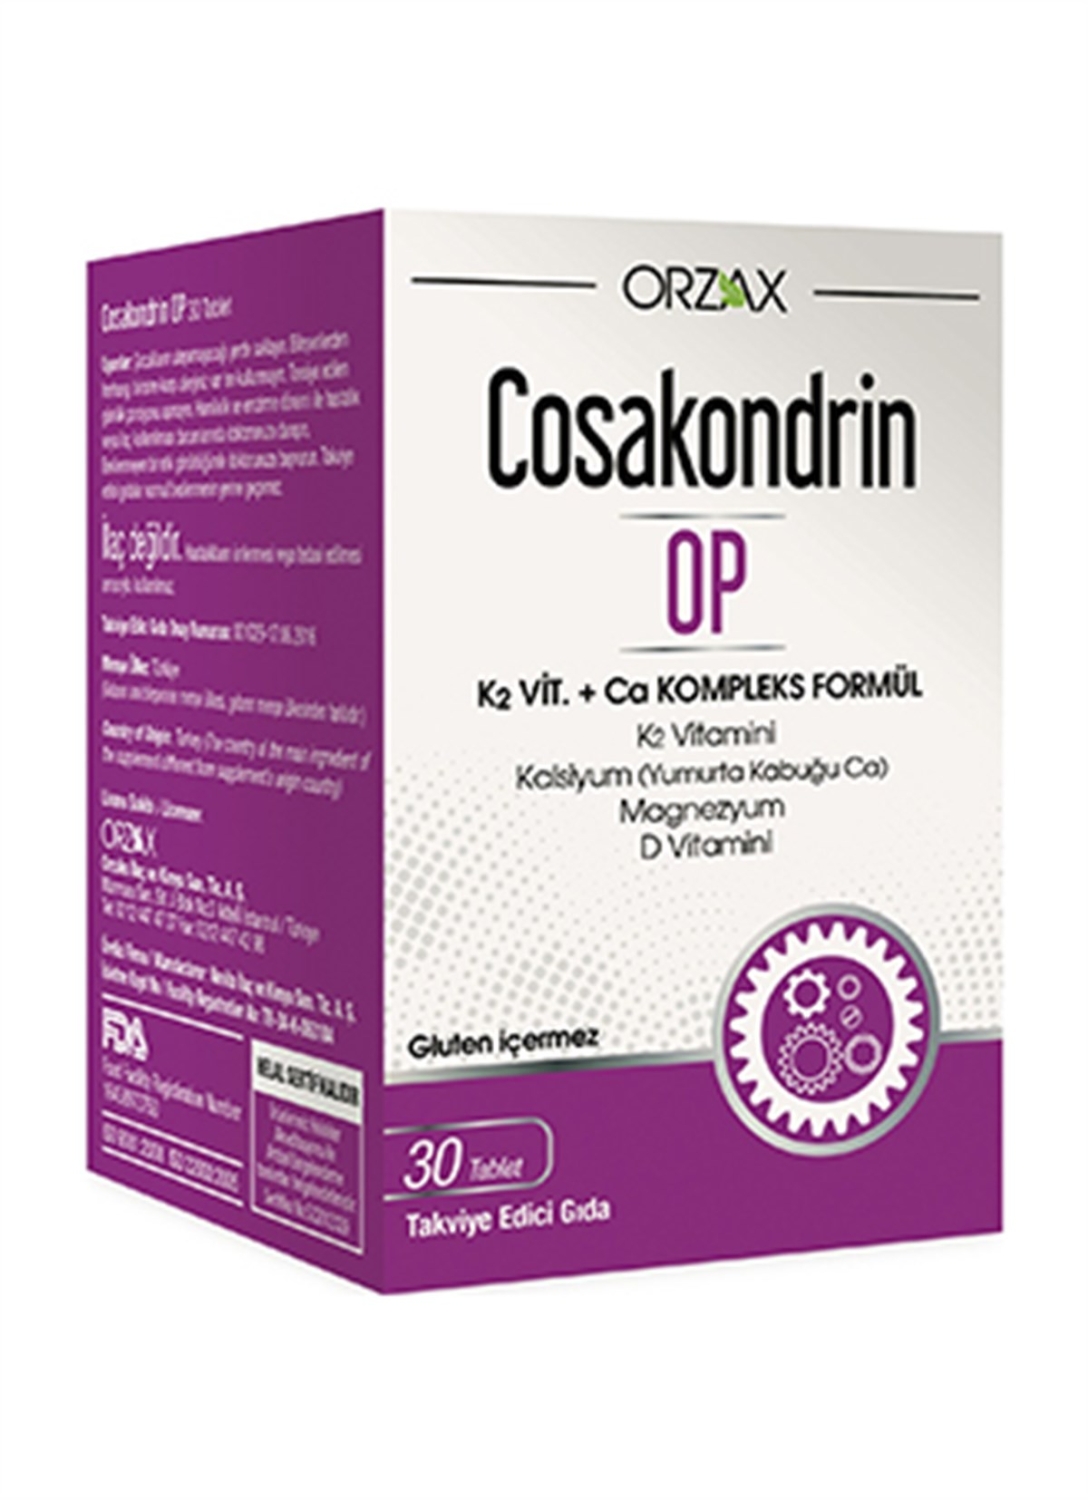 Cosakondrin OP 30 Tablet - 1